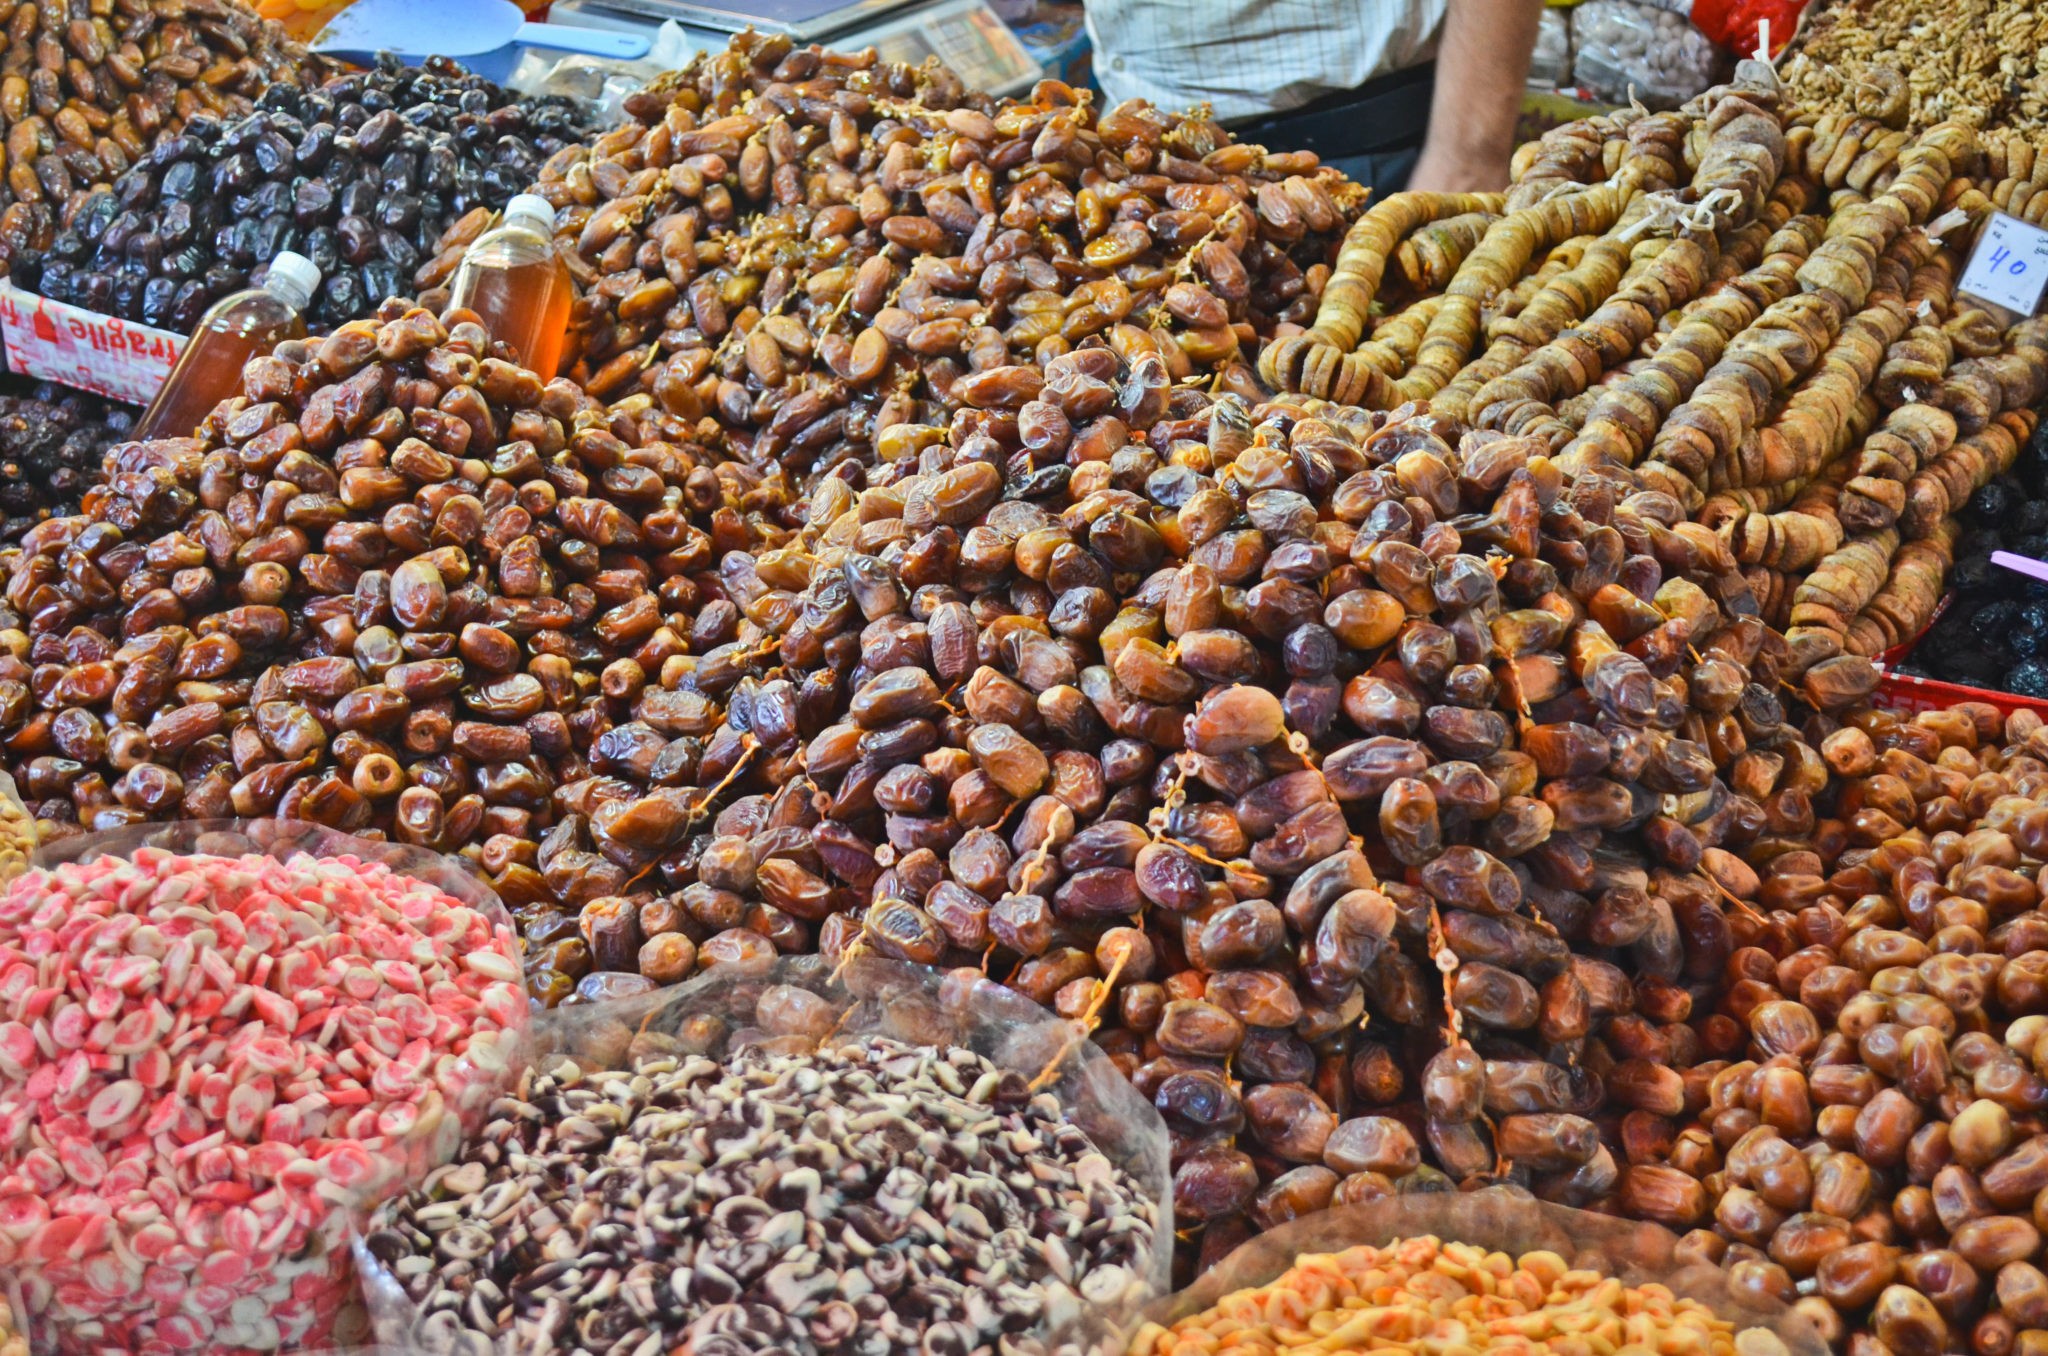 marokanskie jedzenie (1 of 1)-17